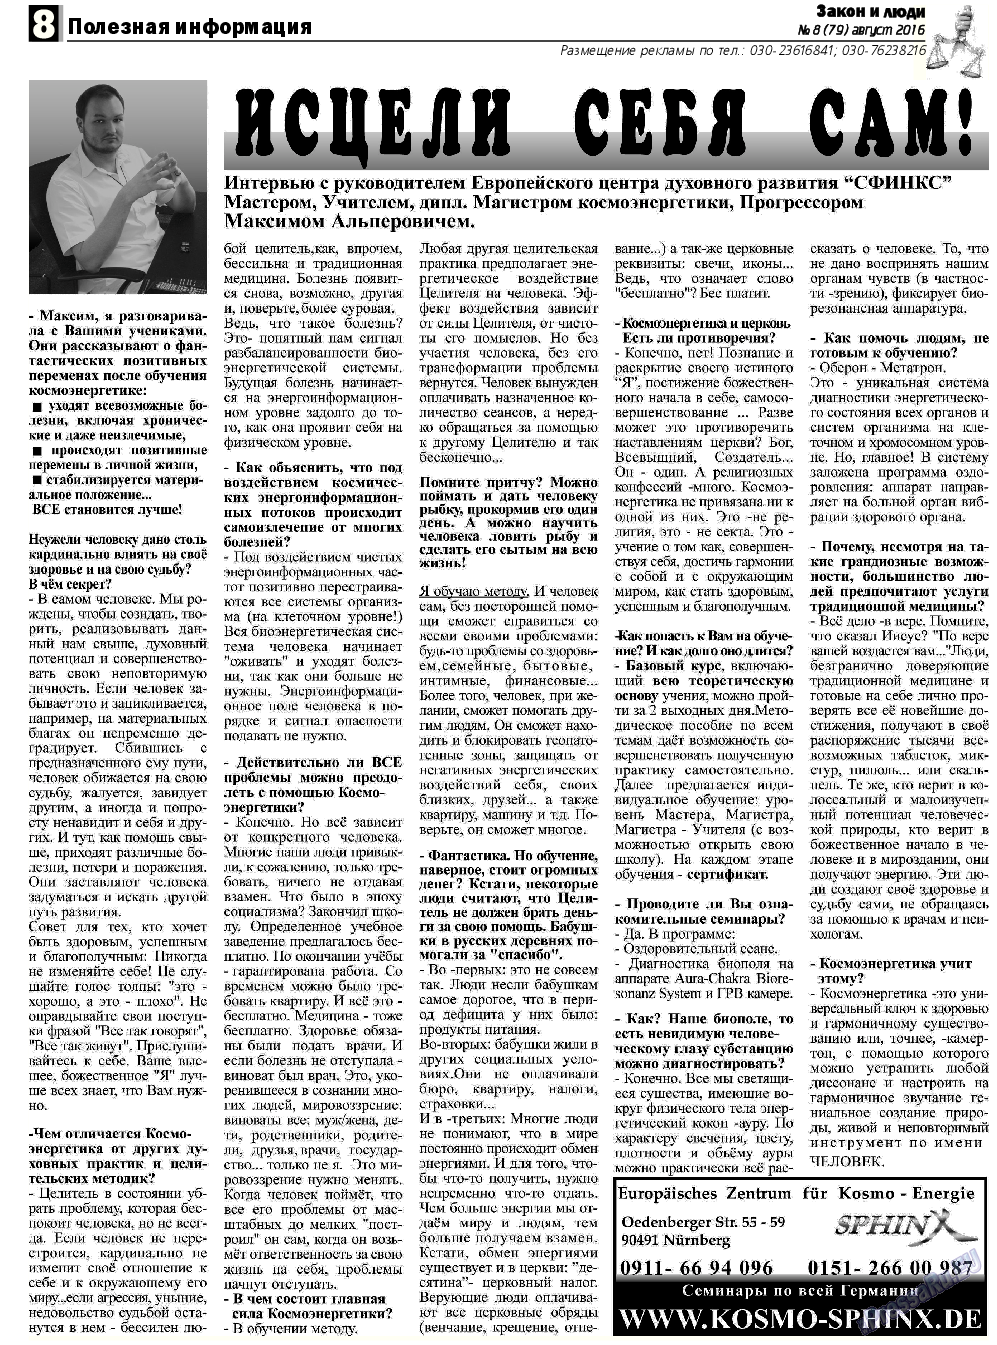 Закон и люди, газета. 2016 №8 стр.8